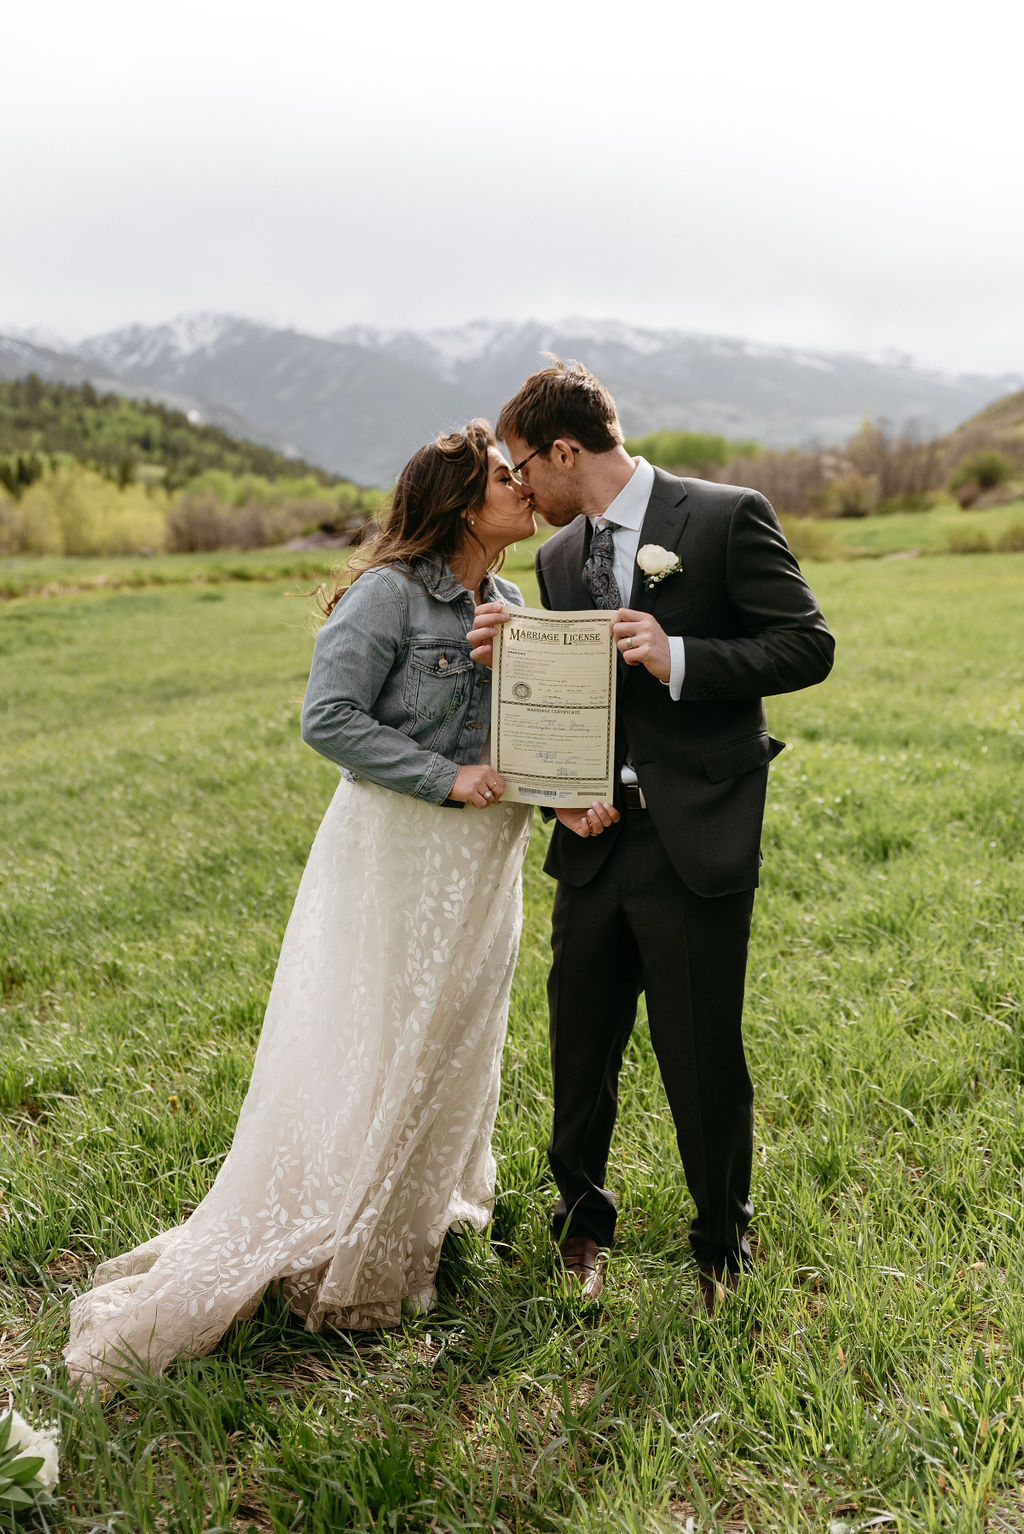 Just married in Aspen Colorado